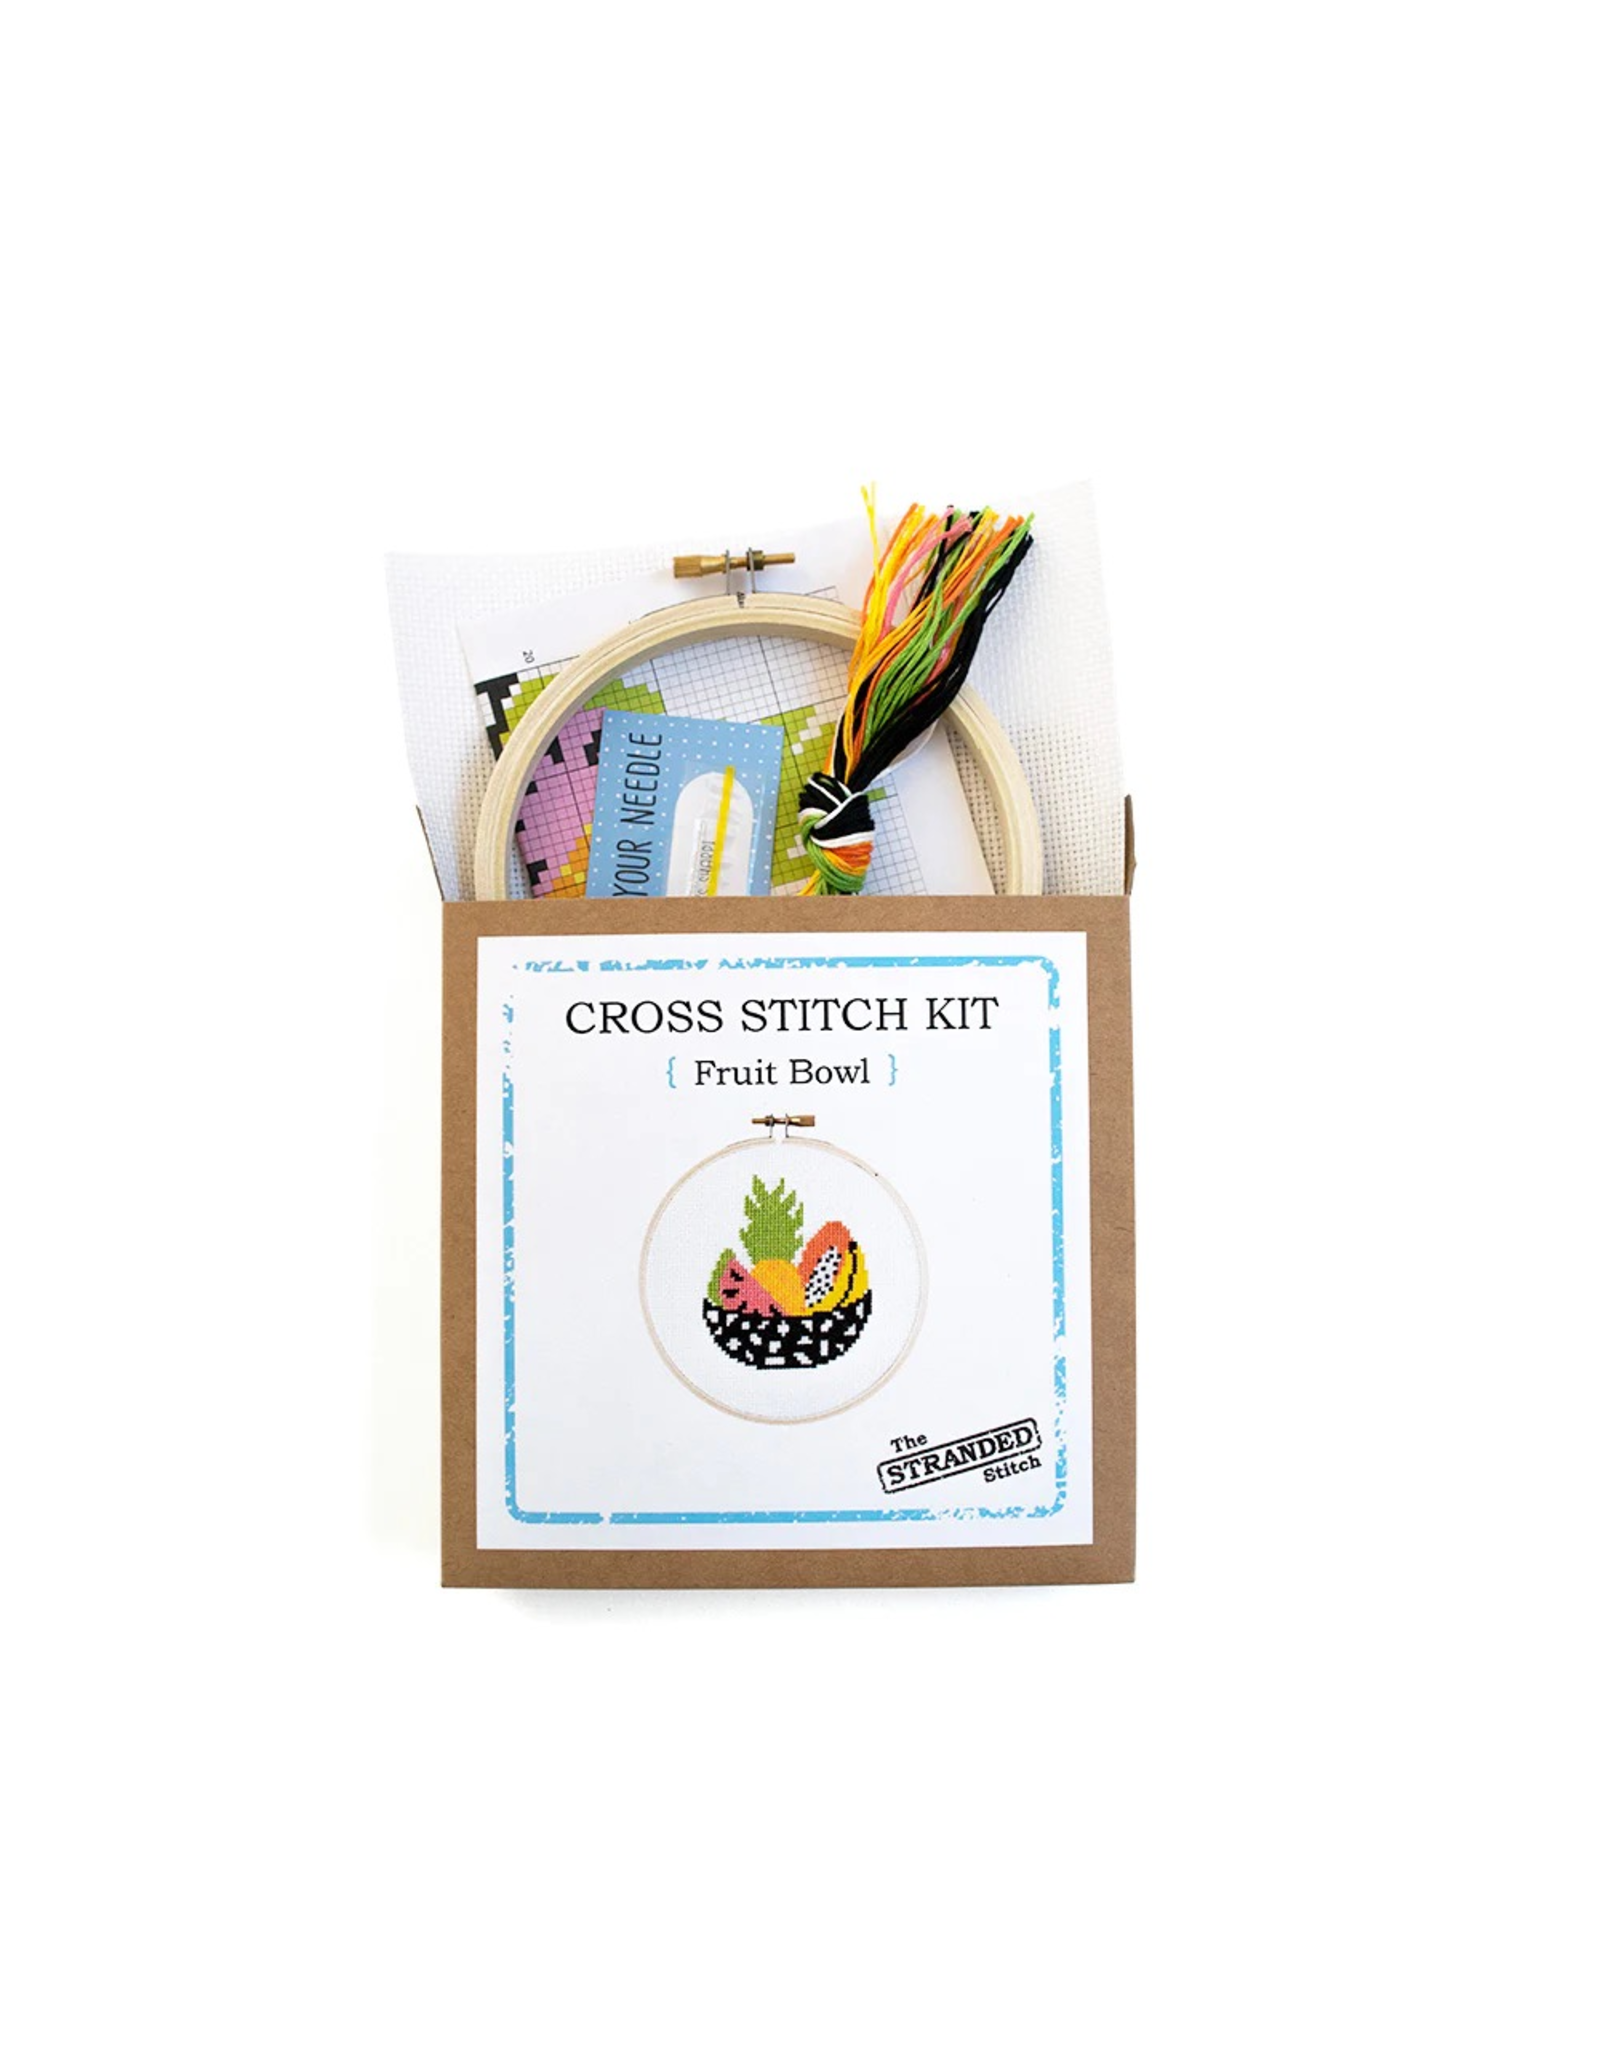 The Stranded Stitch Fruit Bowl Cross Stitch Kit